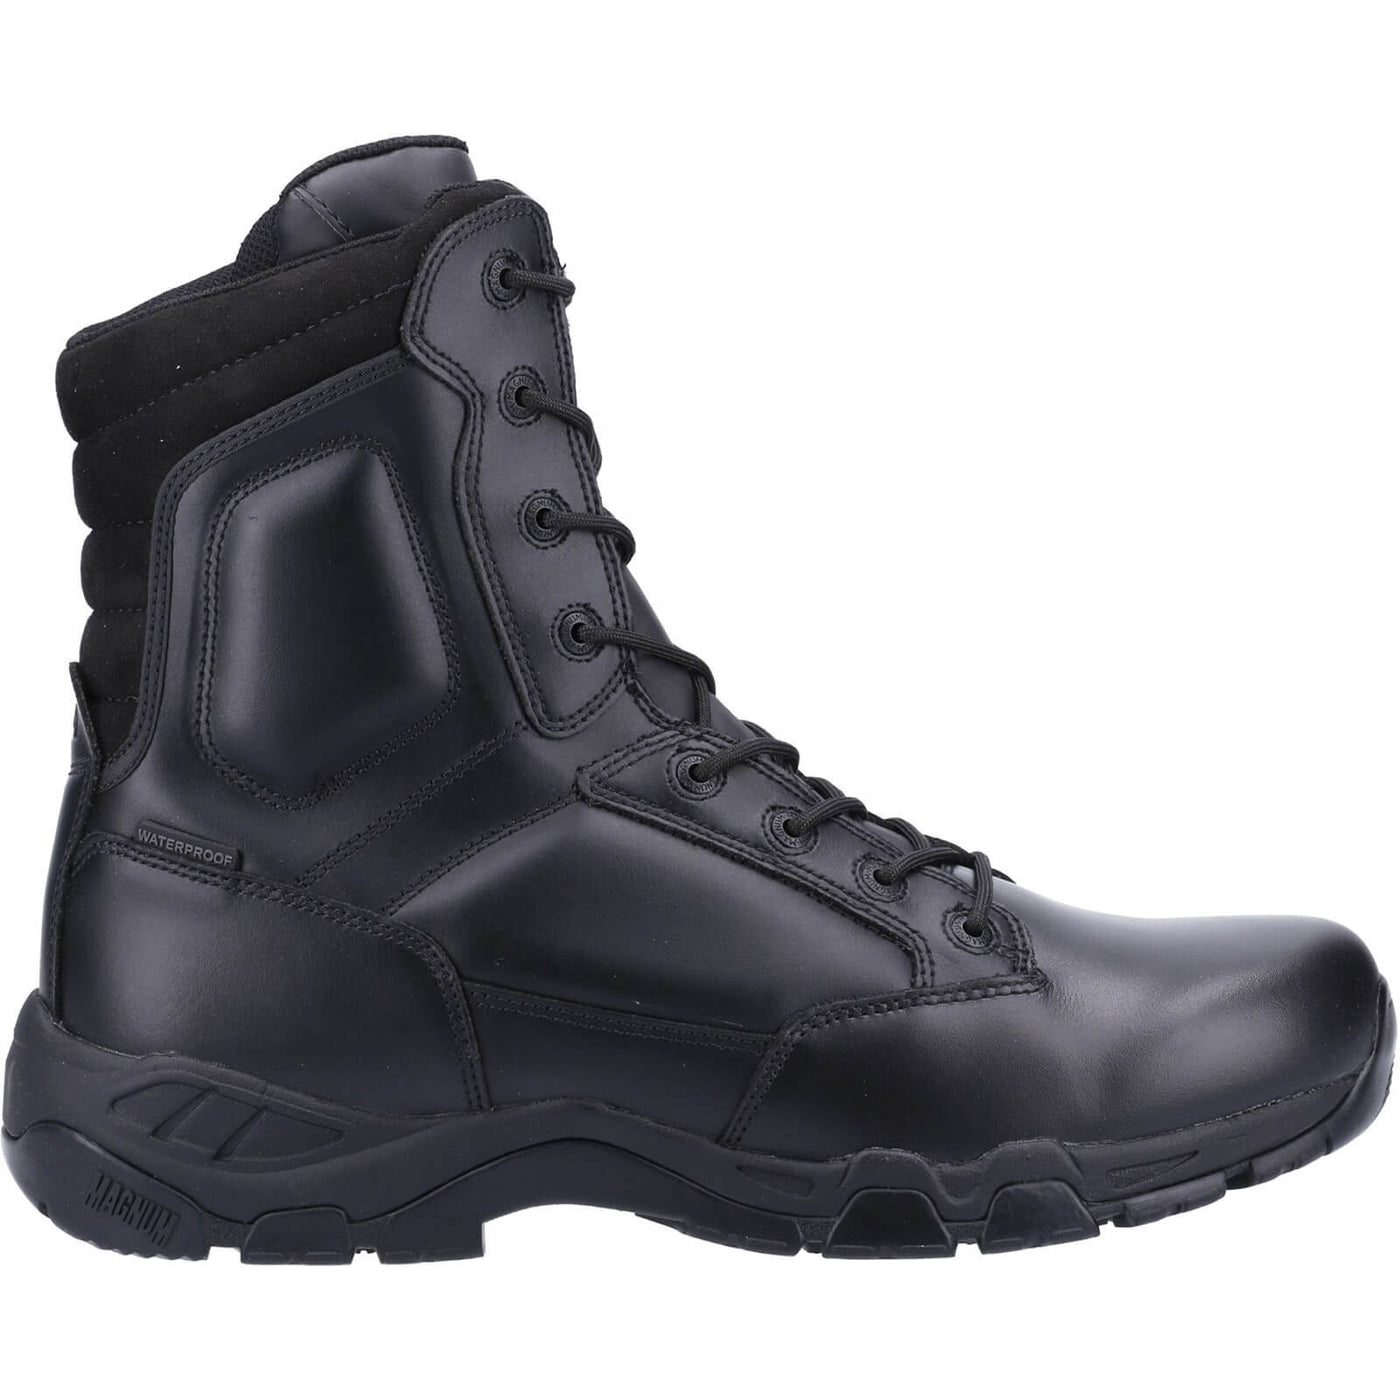 Magnum Viper Pro 8.0 Plus Waterproof Uniform Safety Boots Black 4#colour_black